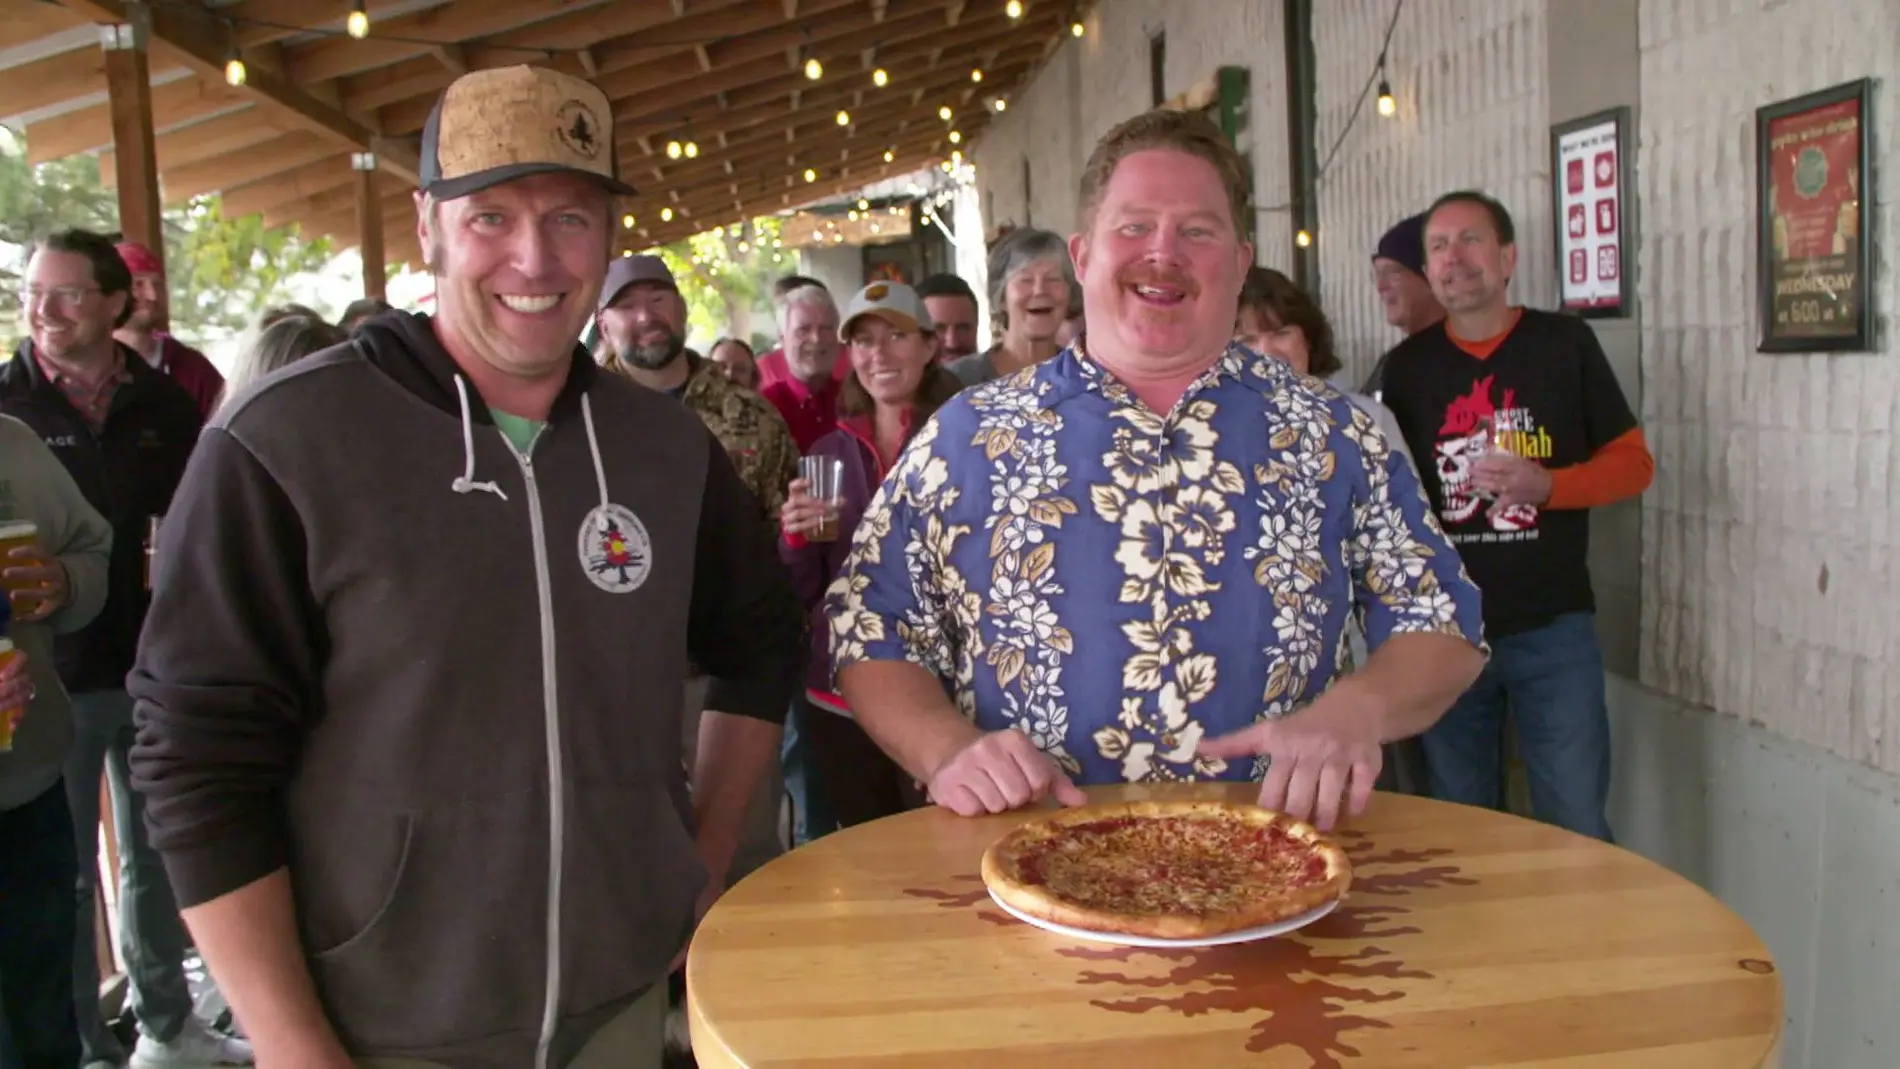 Webb acepta el desafío Ghost Face: devorar una pizza de 25 cm en tiempo réc